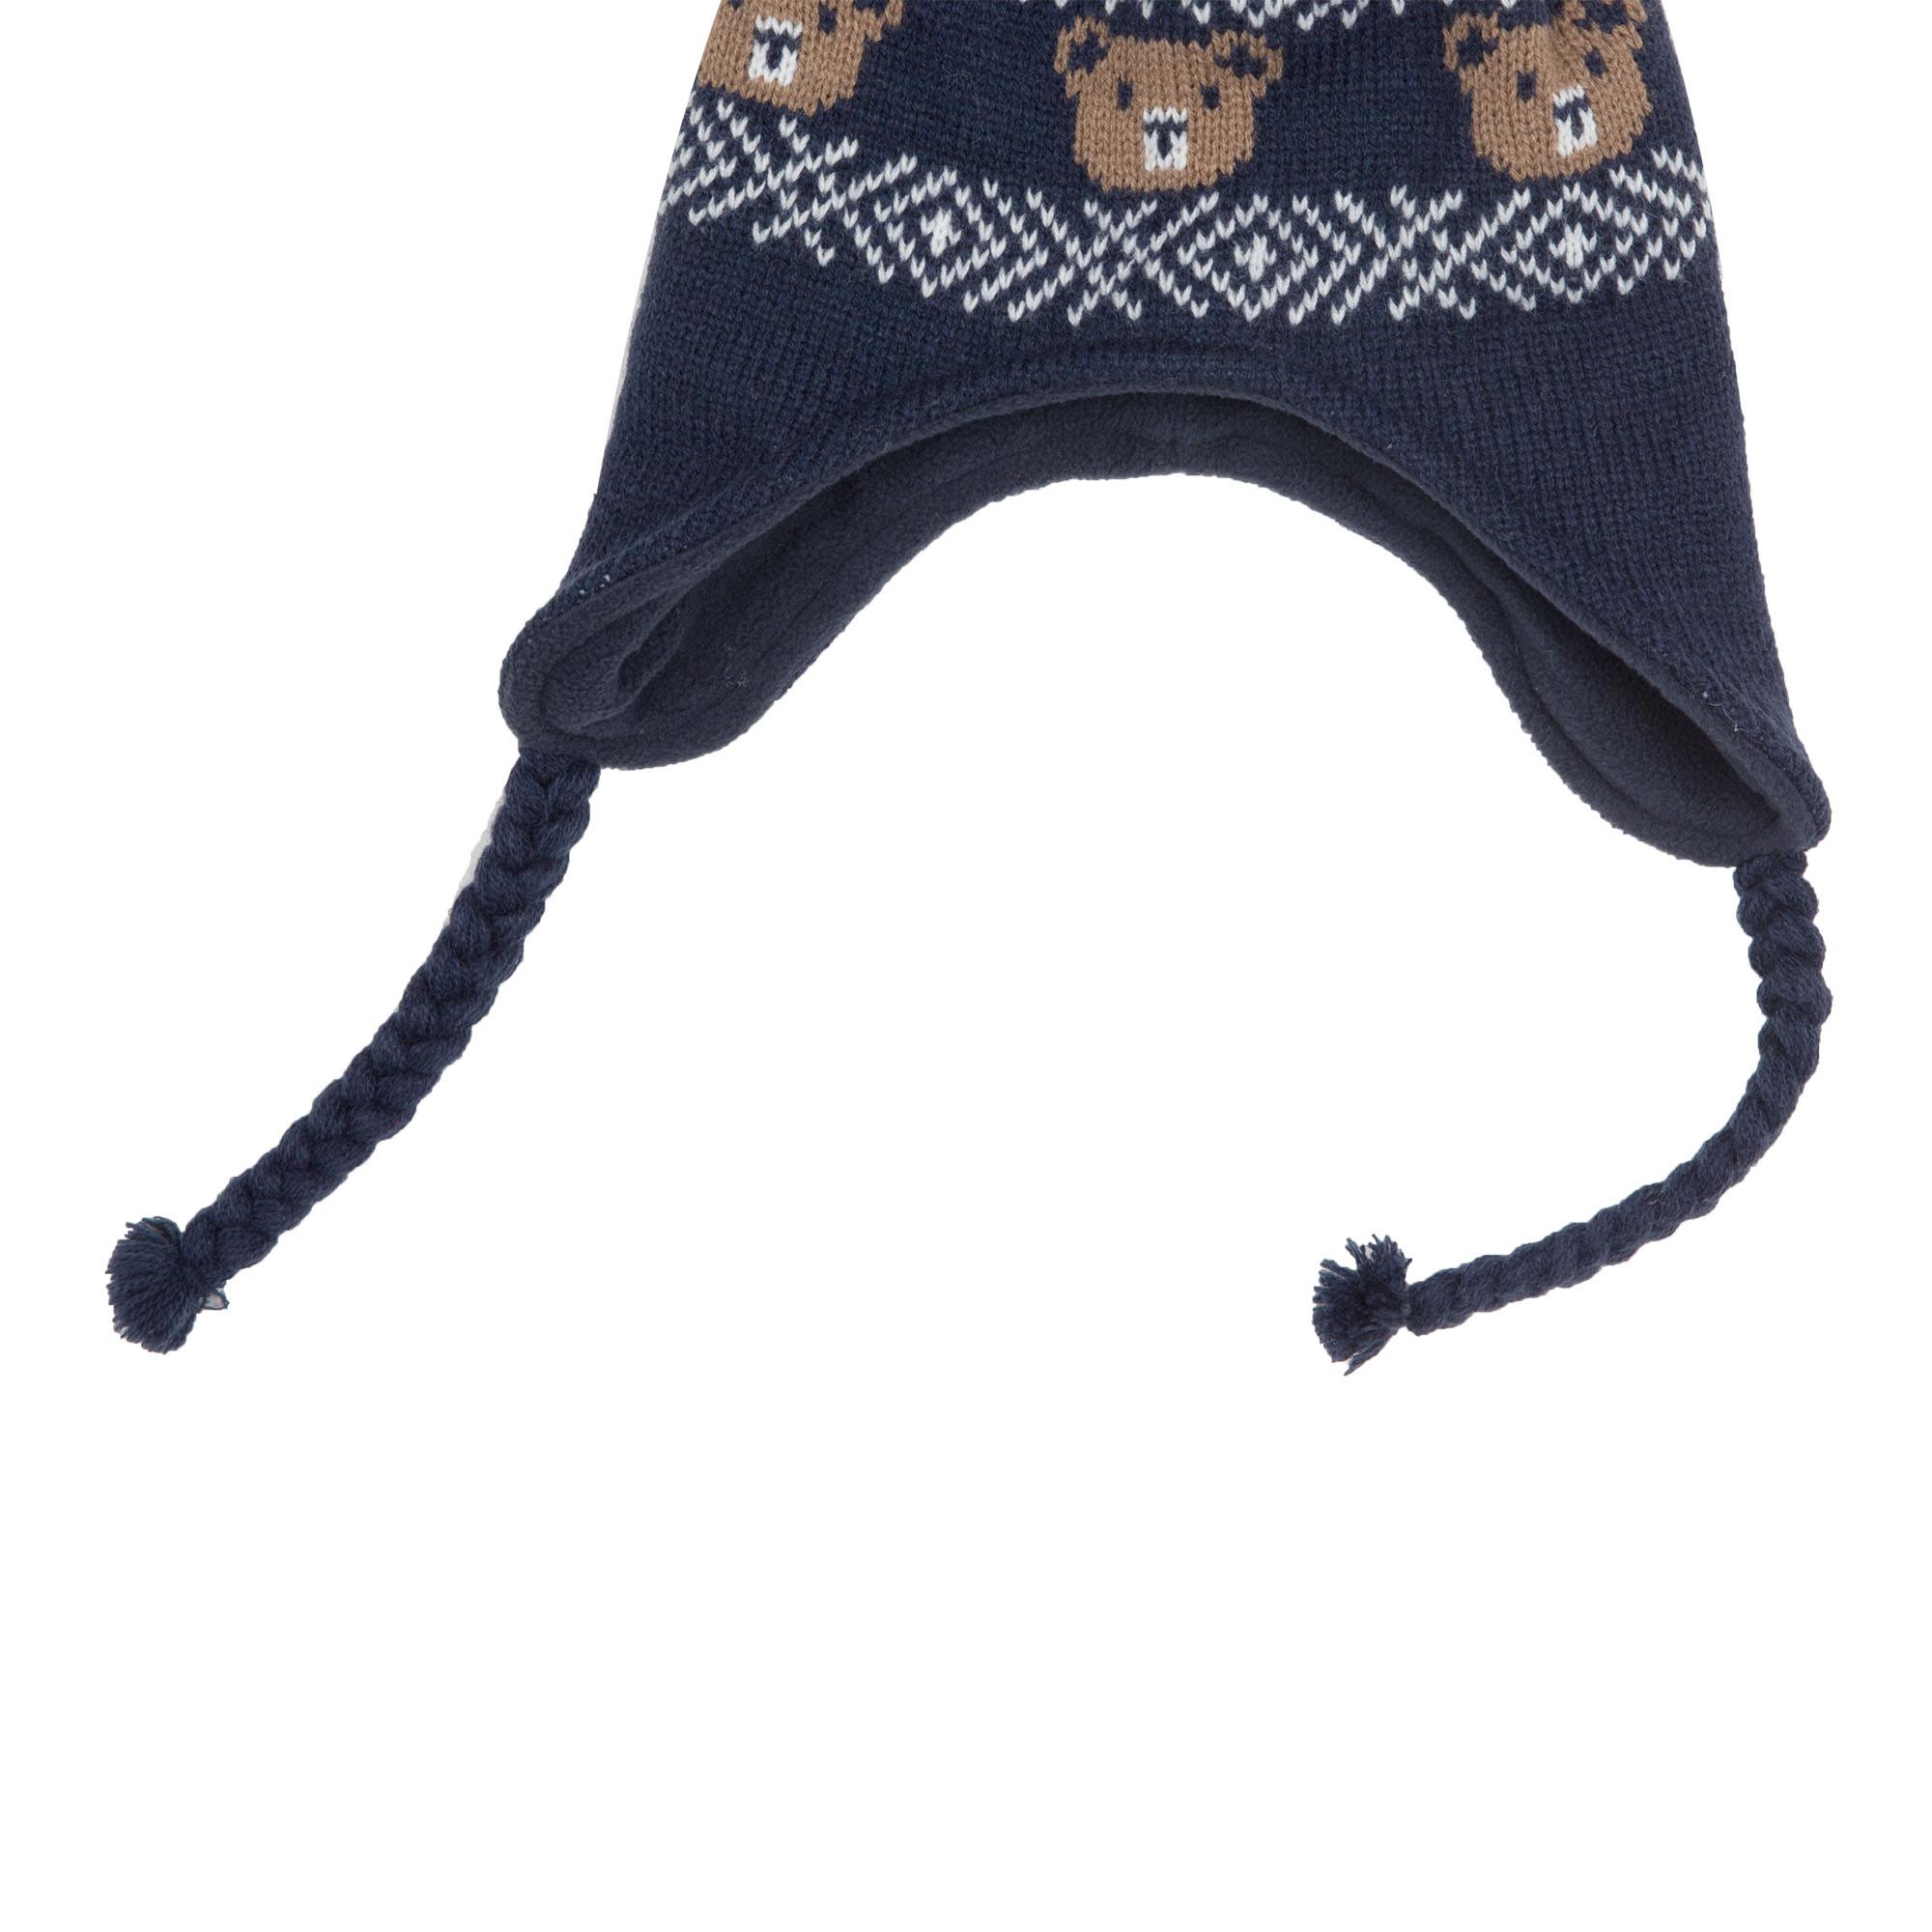 Mawi cappello peruviano greche e orsi - Mawi